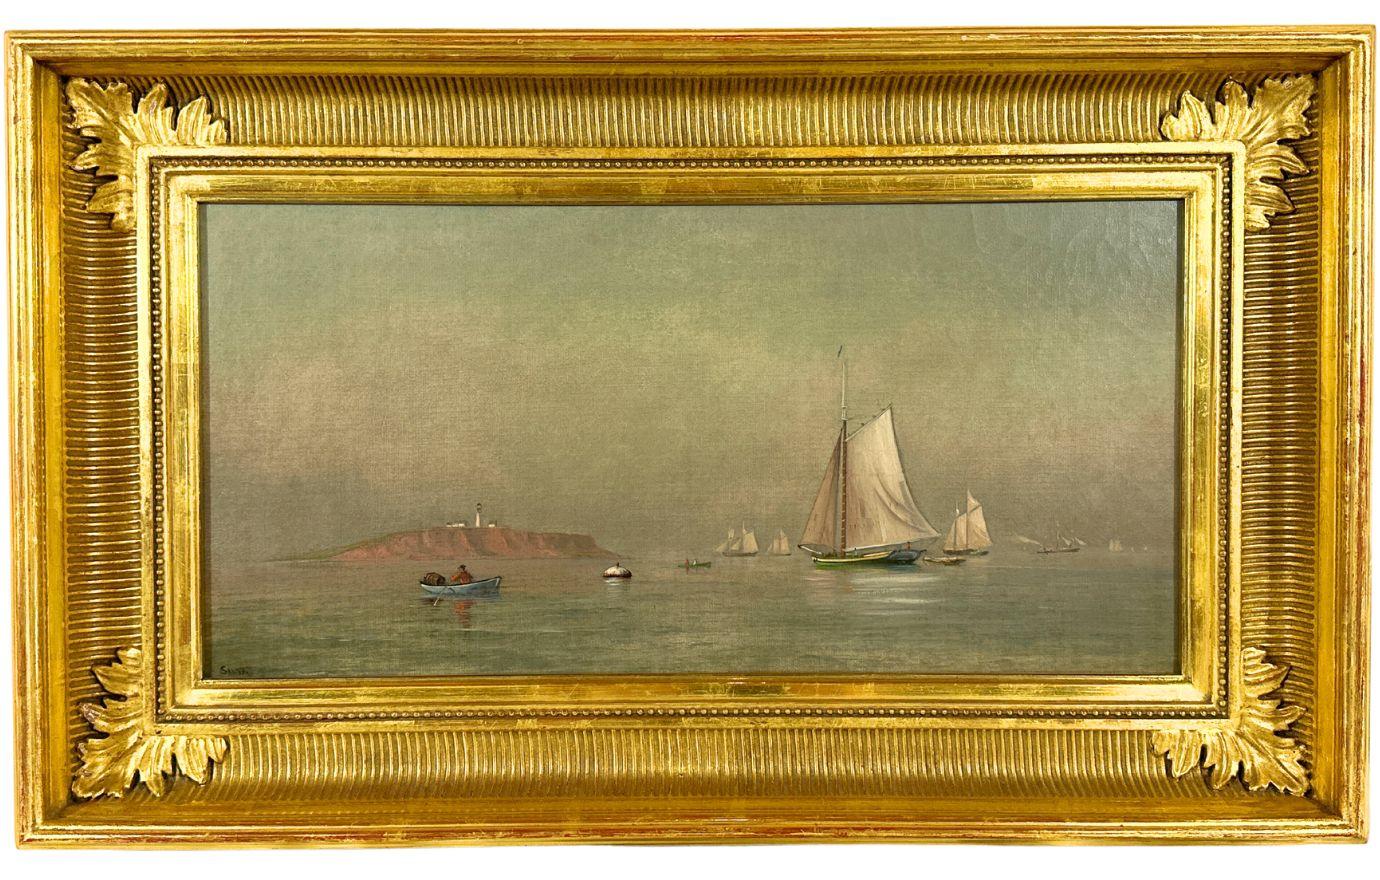 Landscape Painting Francis Augustus Silva - "Montauk Point Lighthouse" Peinture à l'huile académique ancienne du 19ème siècle sur toile 